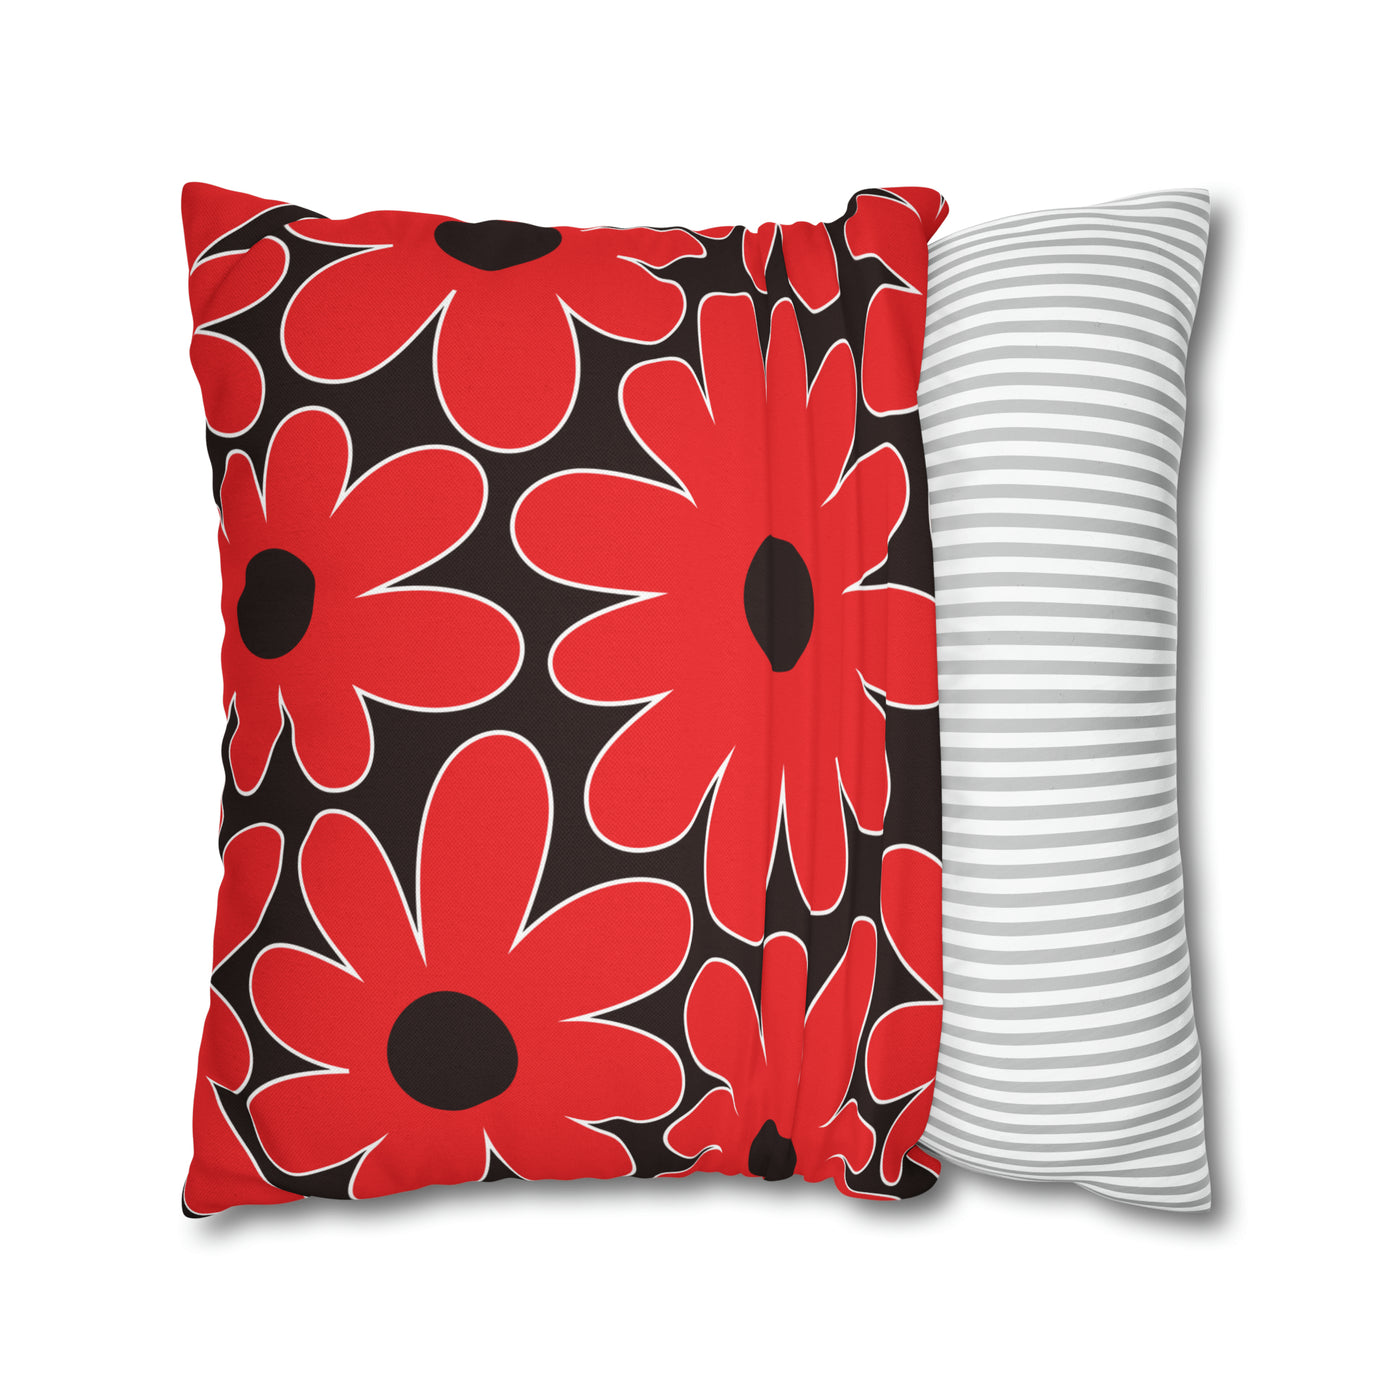 Groovy Flower Pillow